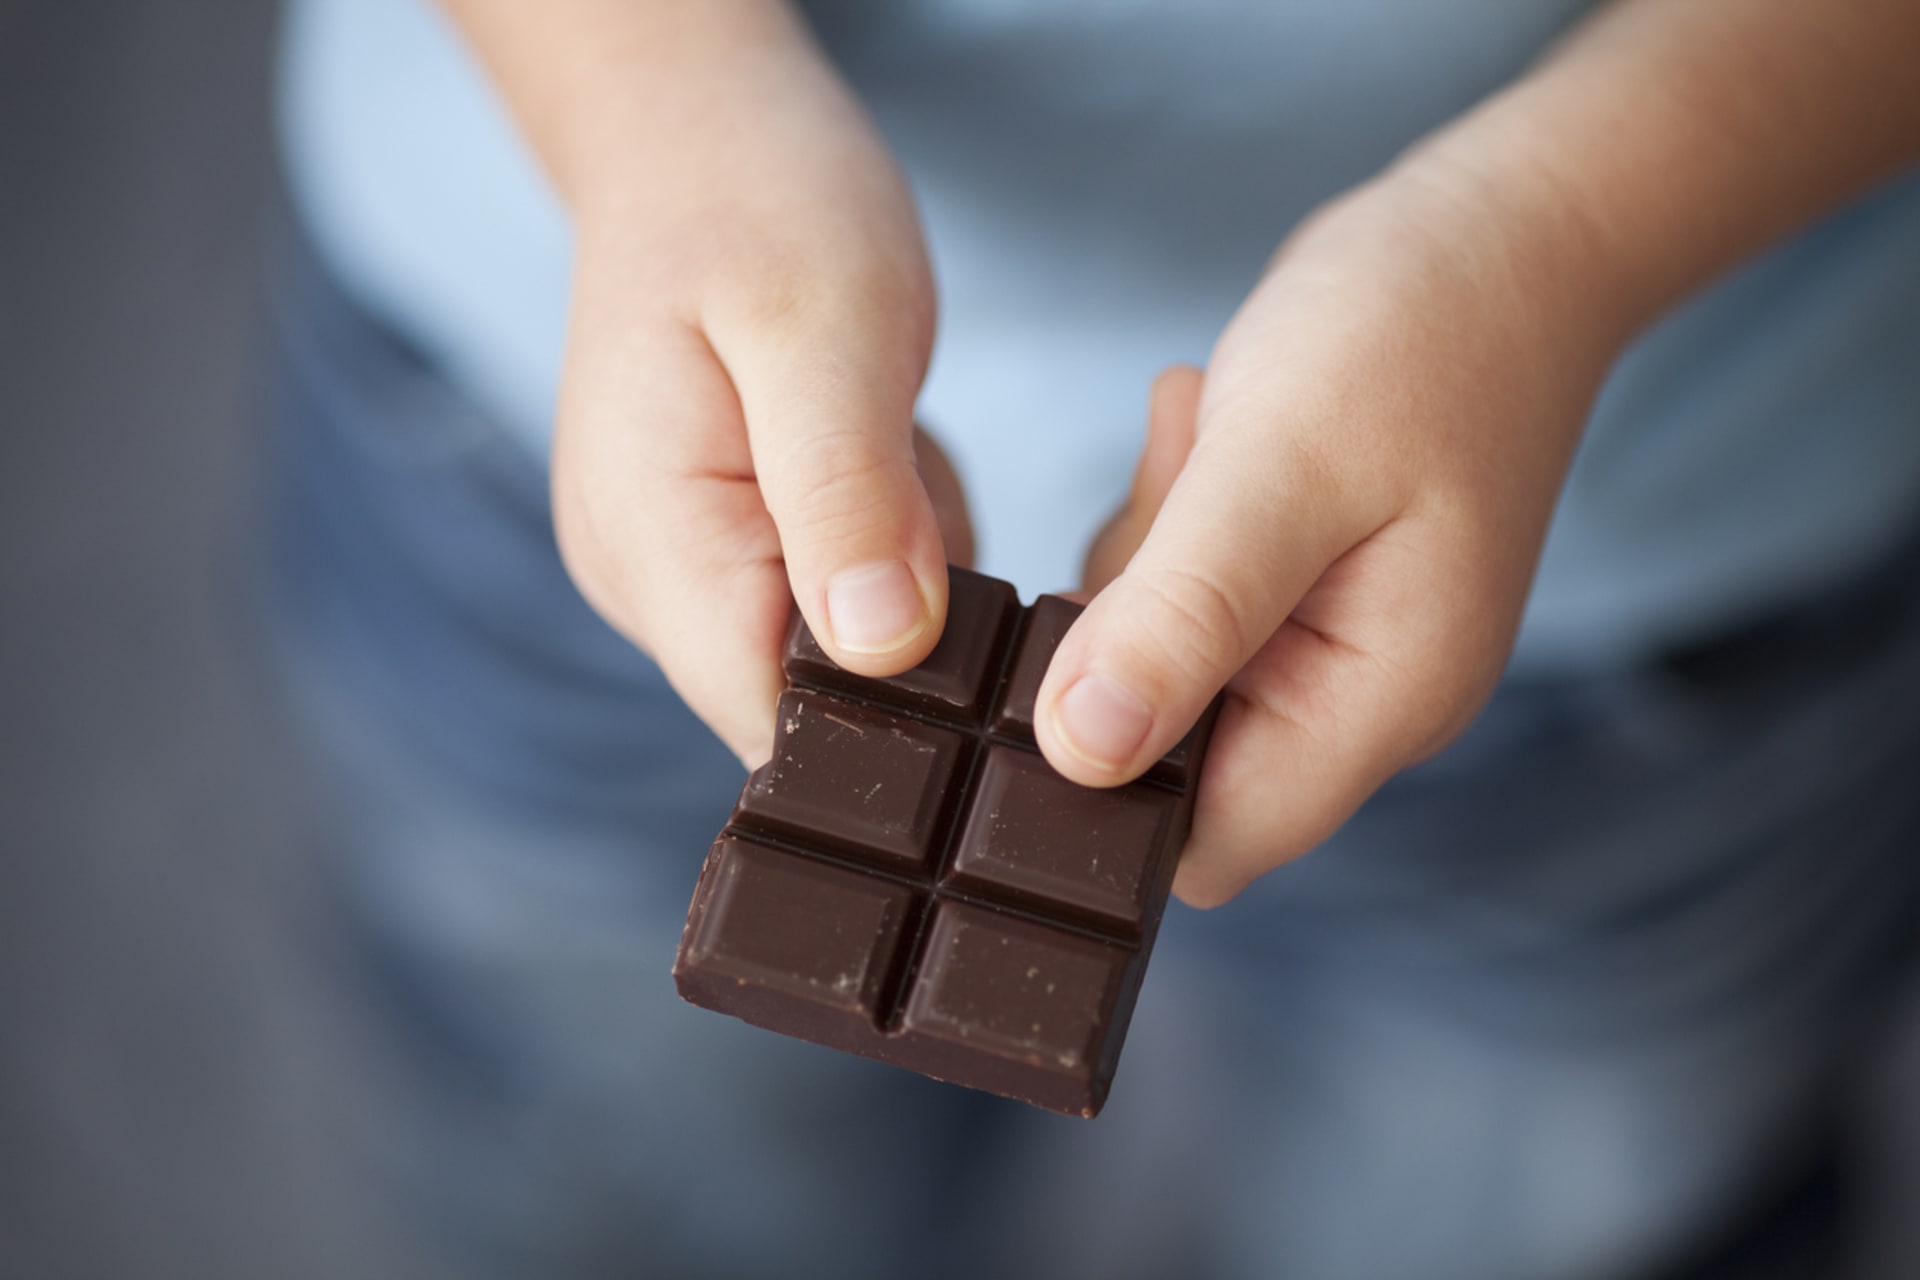 Podezřelý muž nabízel malému chlapci čokoládu.